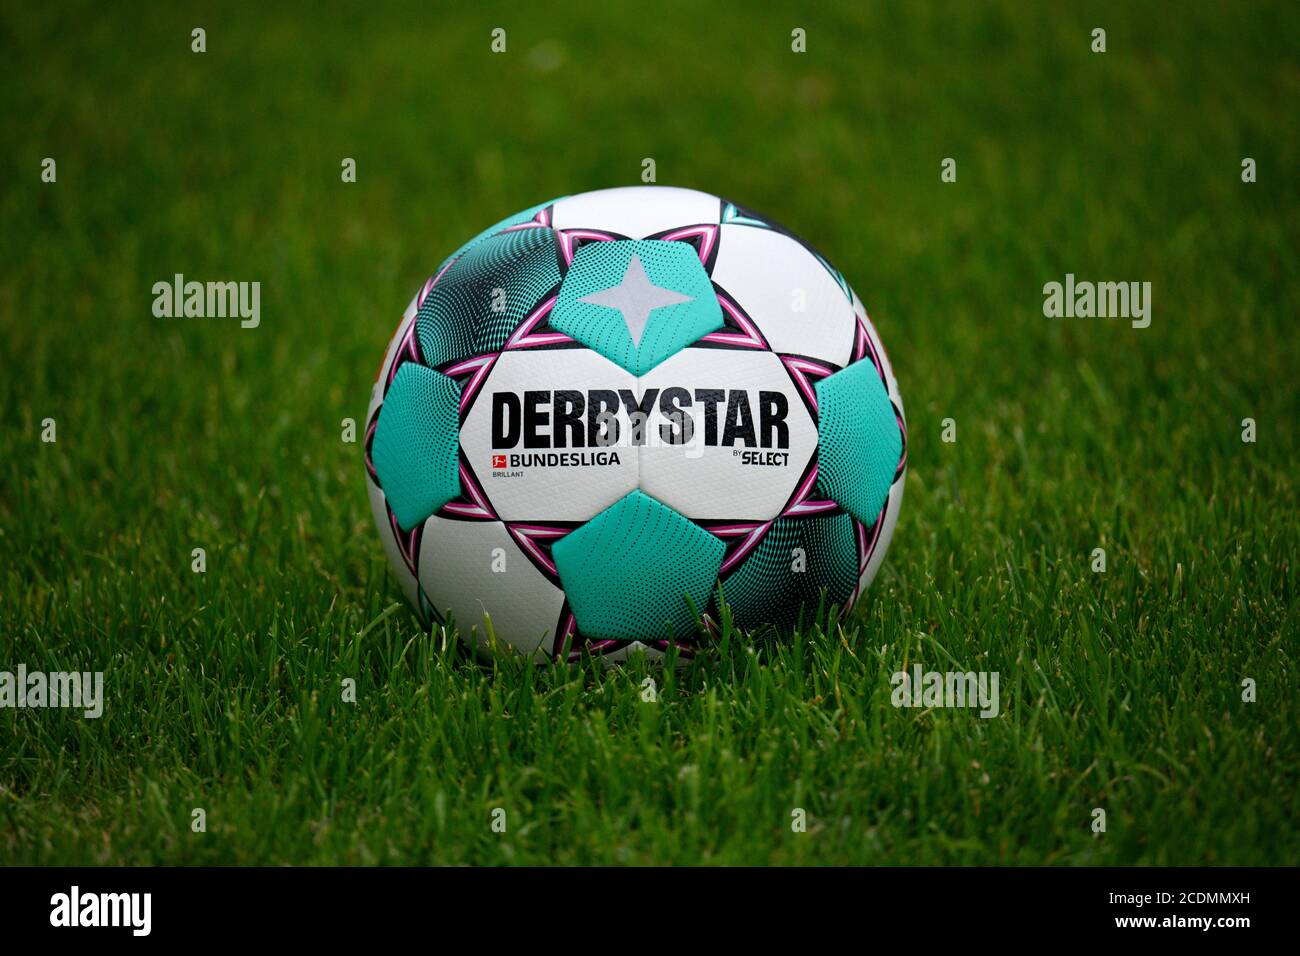 Adidas Derby estrella Brillant APS 20/21, partido de pelota de la temporada 2020/2021 Bundesliga en color turquesa y púrpura, se encuentra en el césped, Alemania Foto de stock